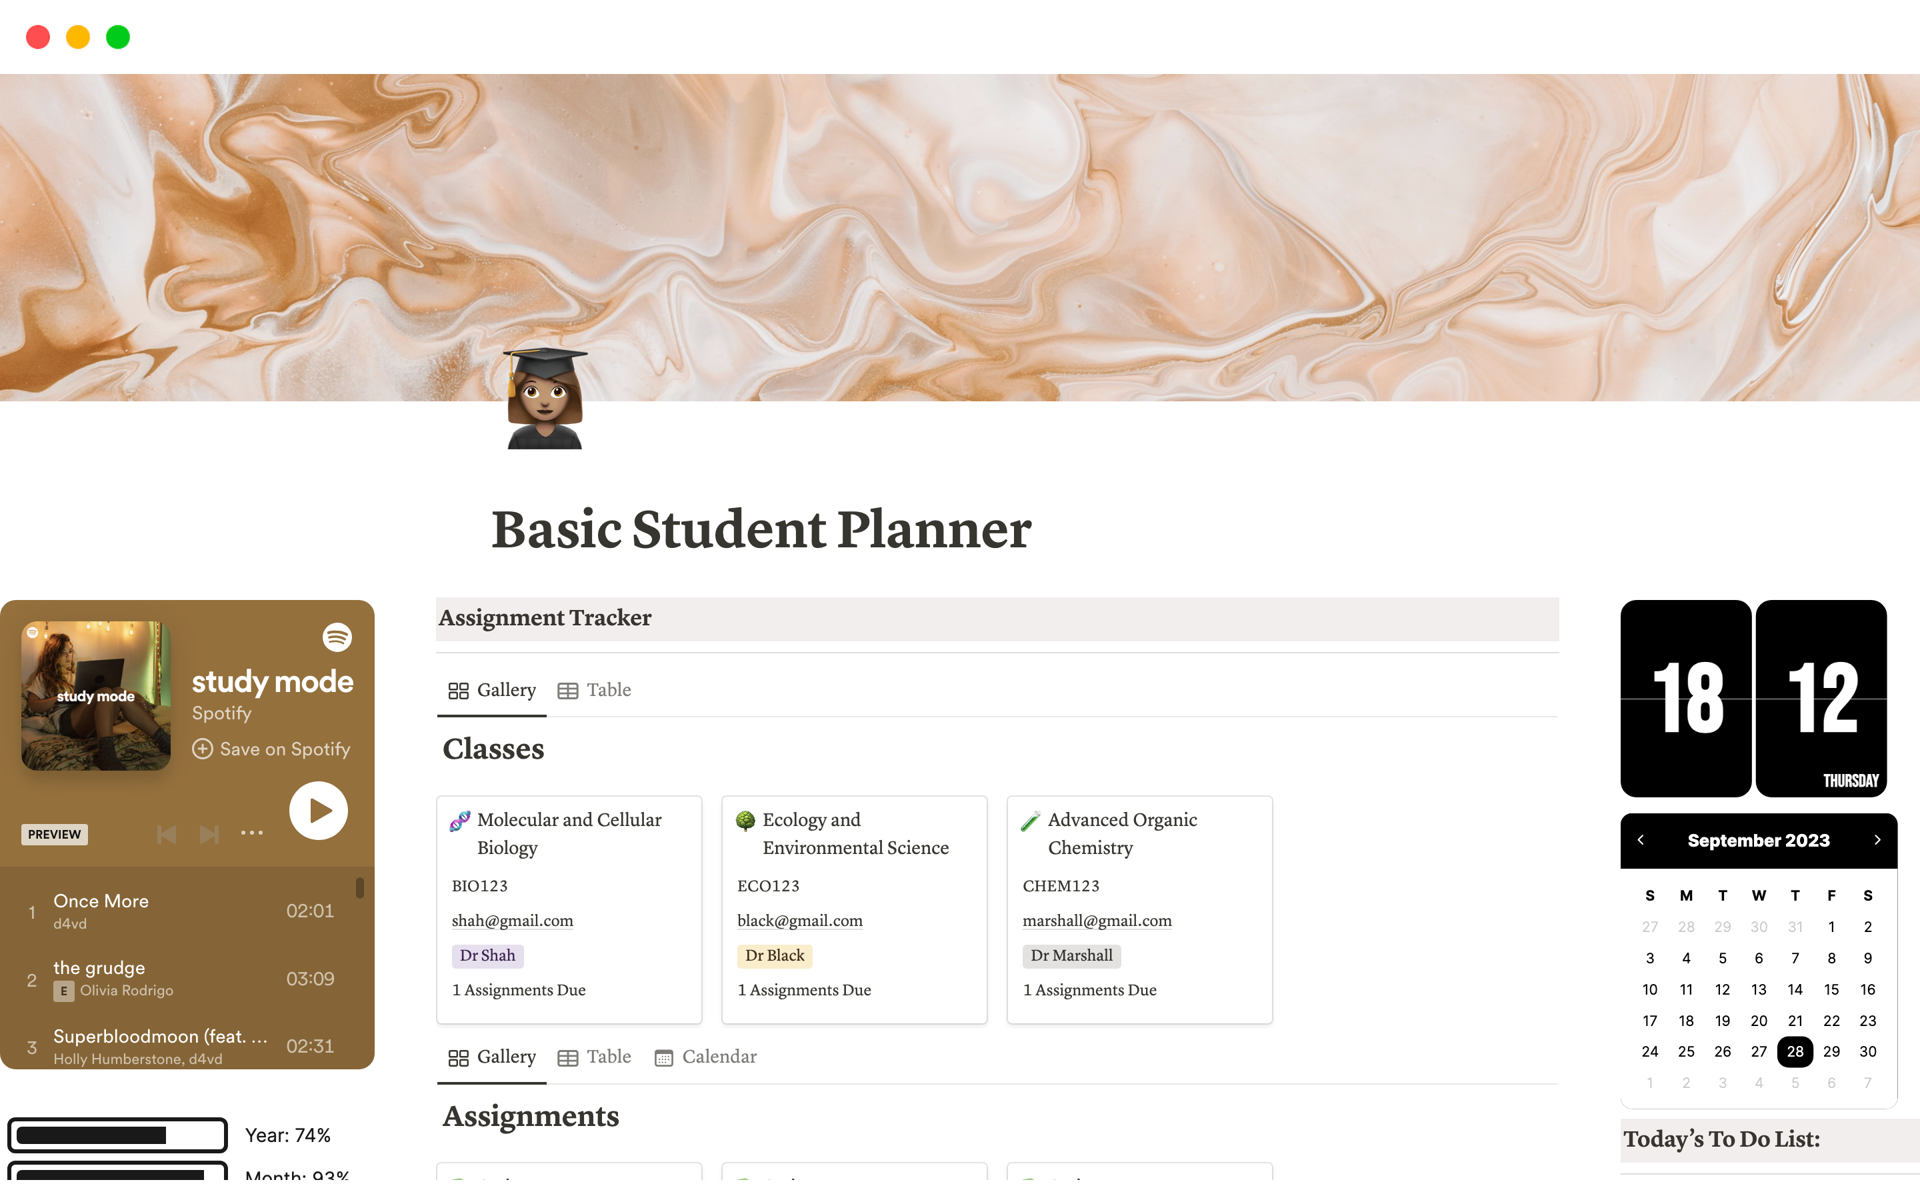 Basic Student Planner